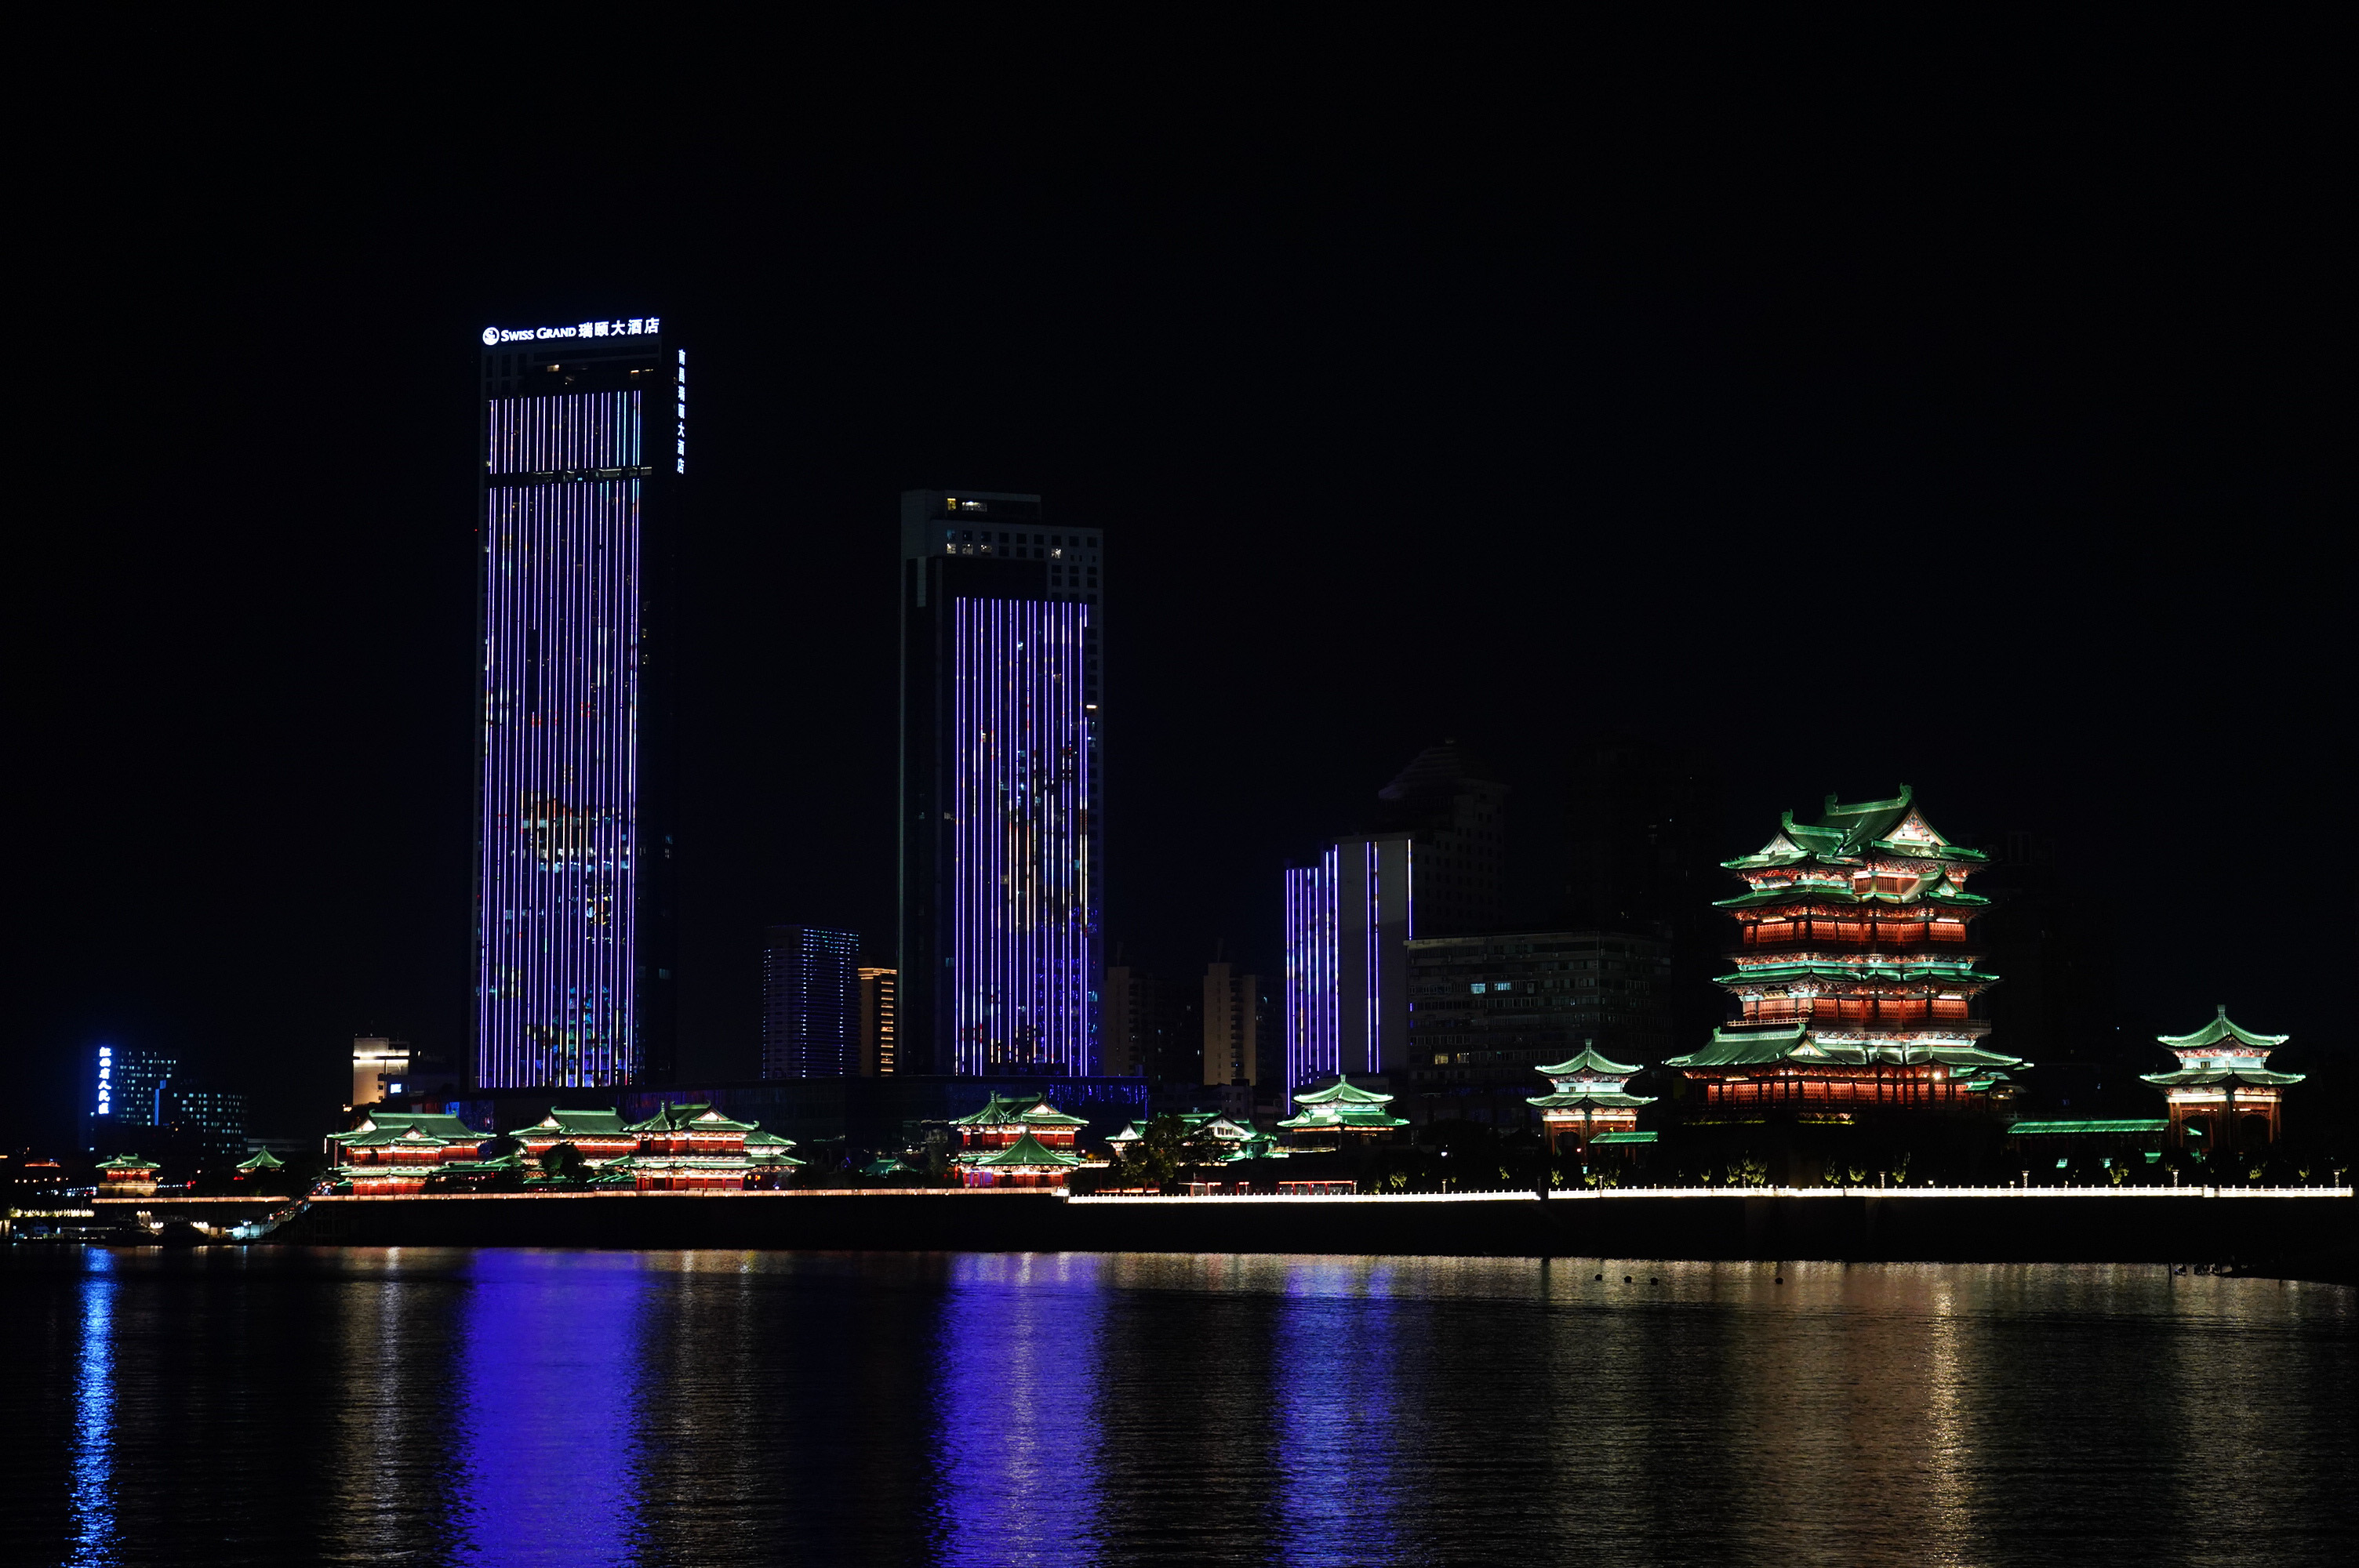 在江西南昌,游客在游上观赏夜景(8月6日摄).